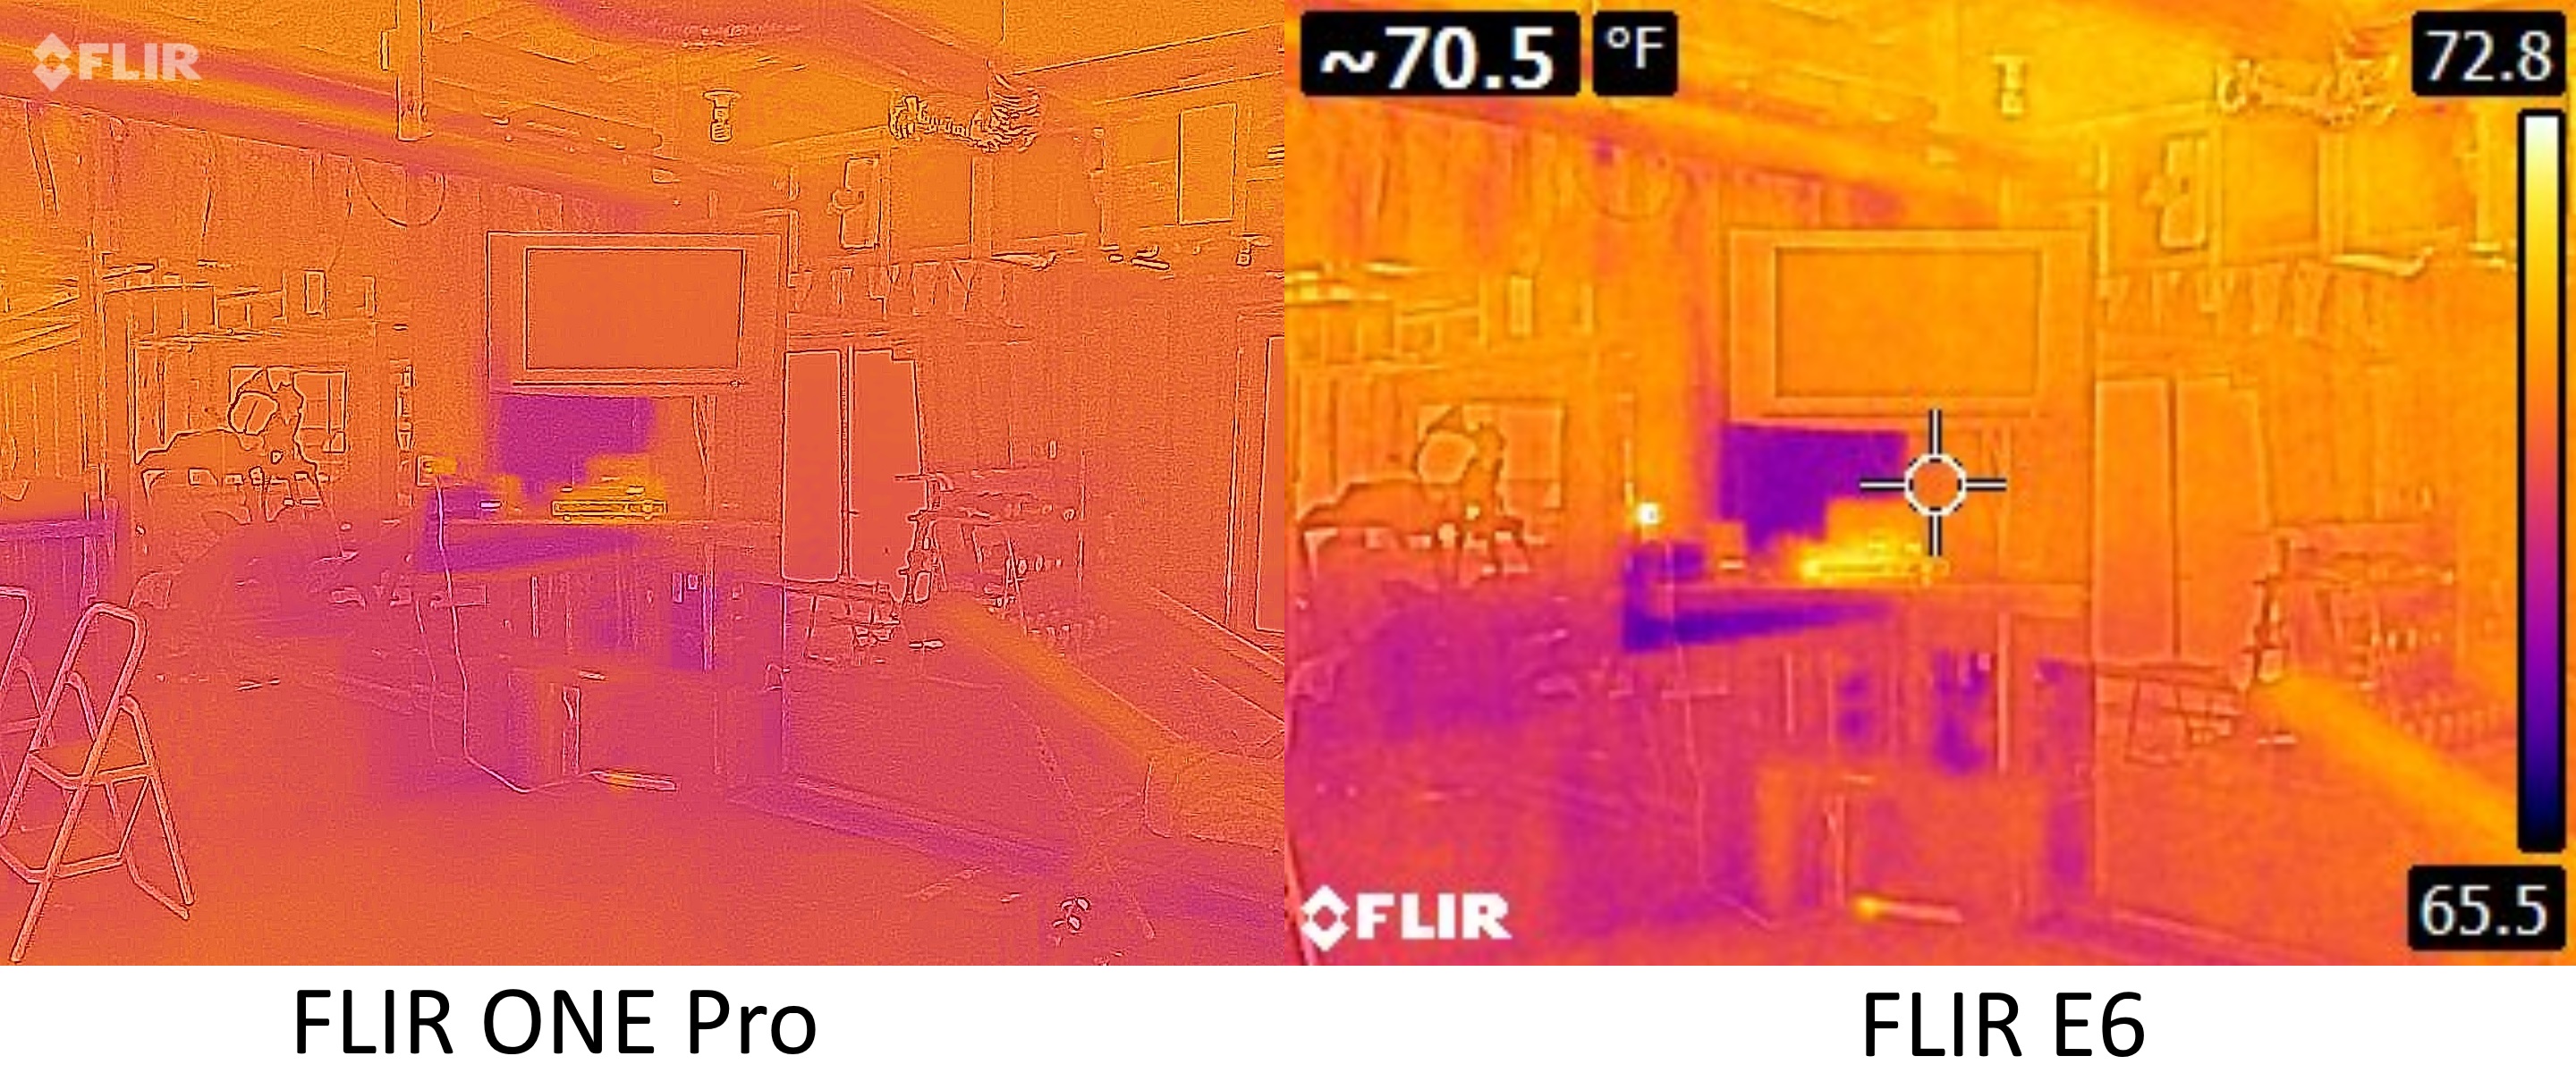 Présentation de la caméra thermique FLIR ONE Pro LT